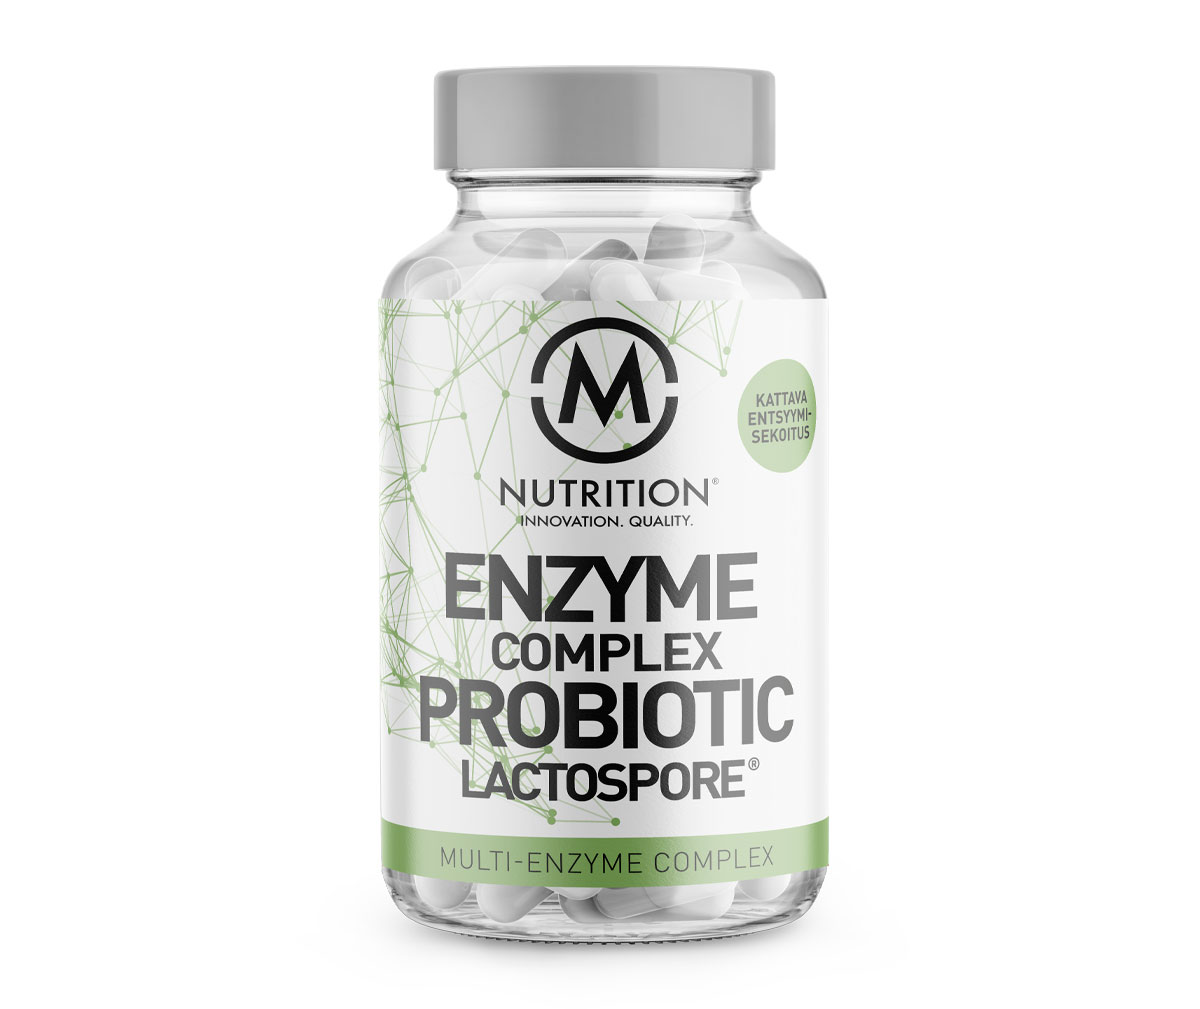 M-Nutrition Enzyme Complex & Probiotic Lactospore, 100 kaps.